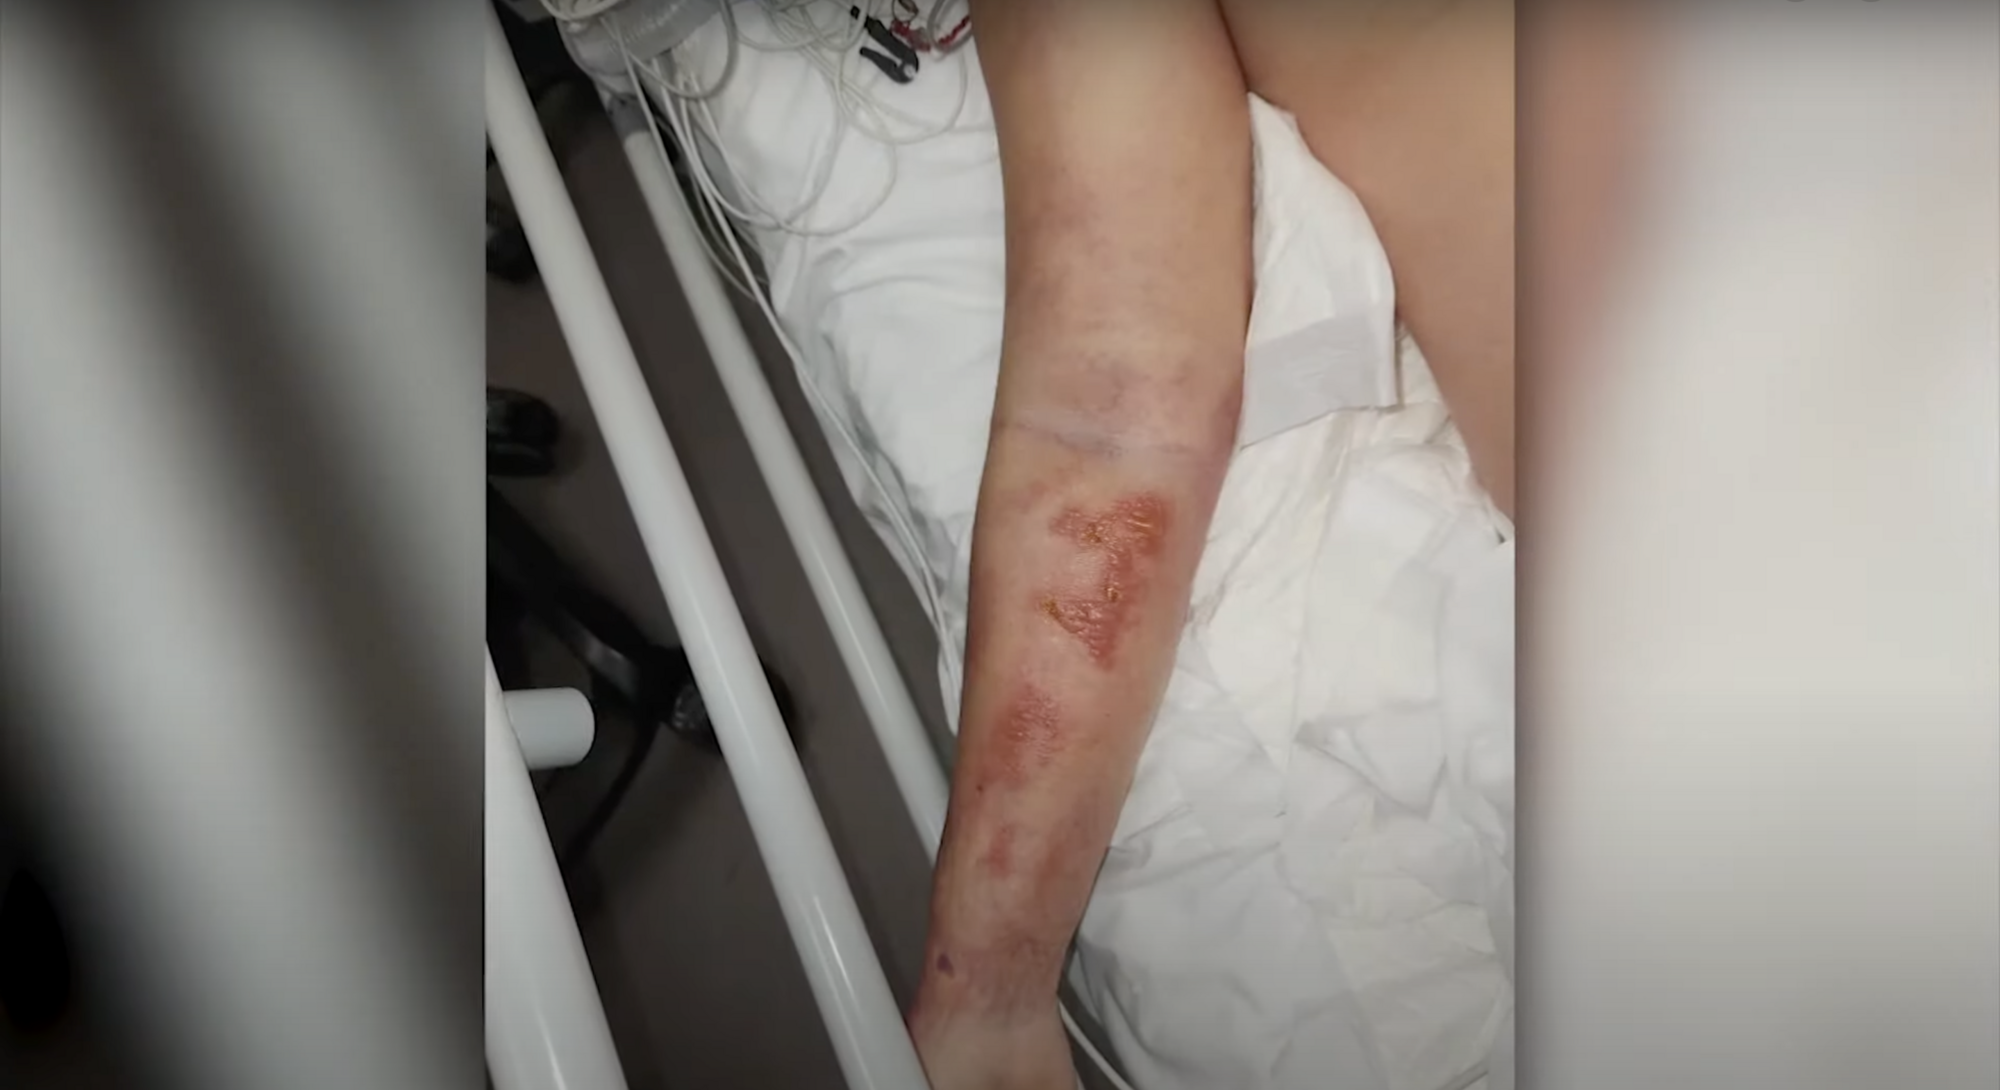 Екатерина Тышкевич впервые показала руку, которую заразили в психбольнице стафилококком, и объяснила, почему не будет подавать в суд